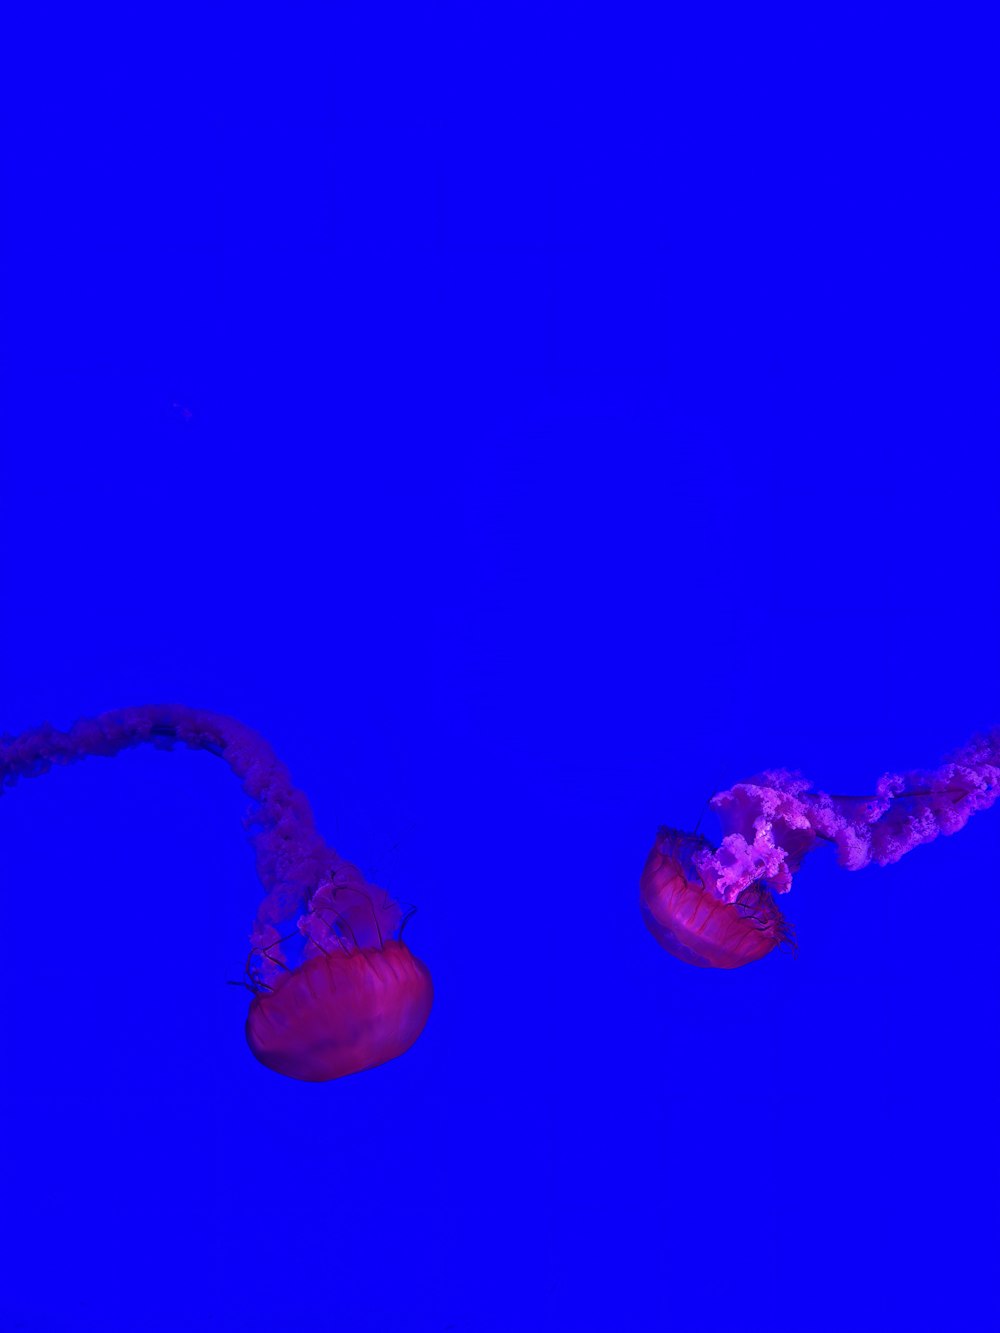 깊고 푸른 바다에서 헤엄치는 두 마리의 해파리